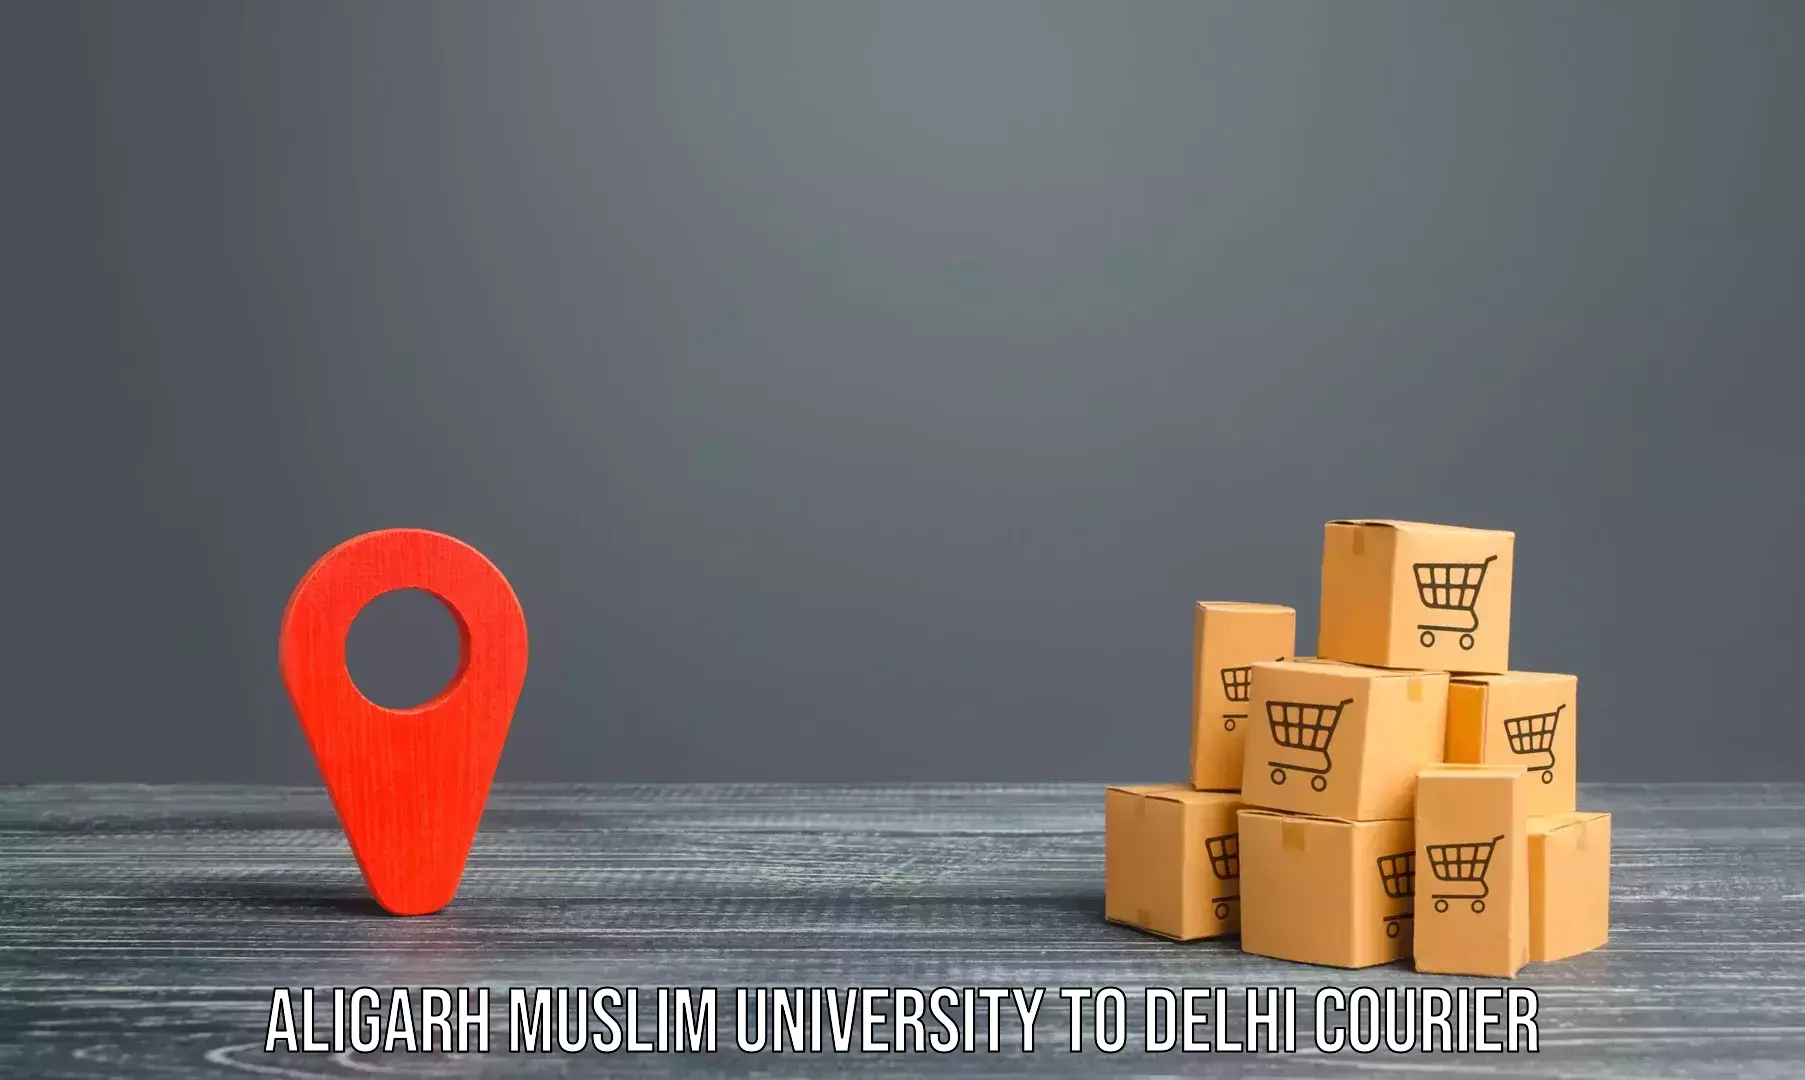 Budget-friendly movers Aligarh Muslim University to Subhash Nagar